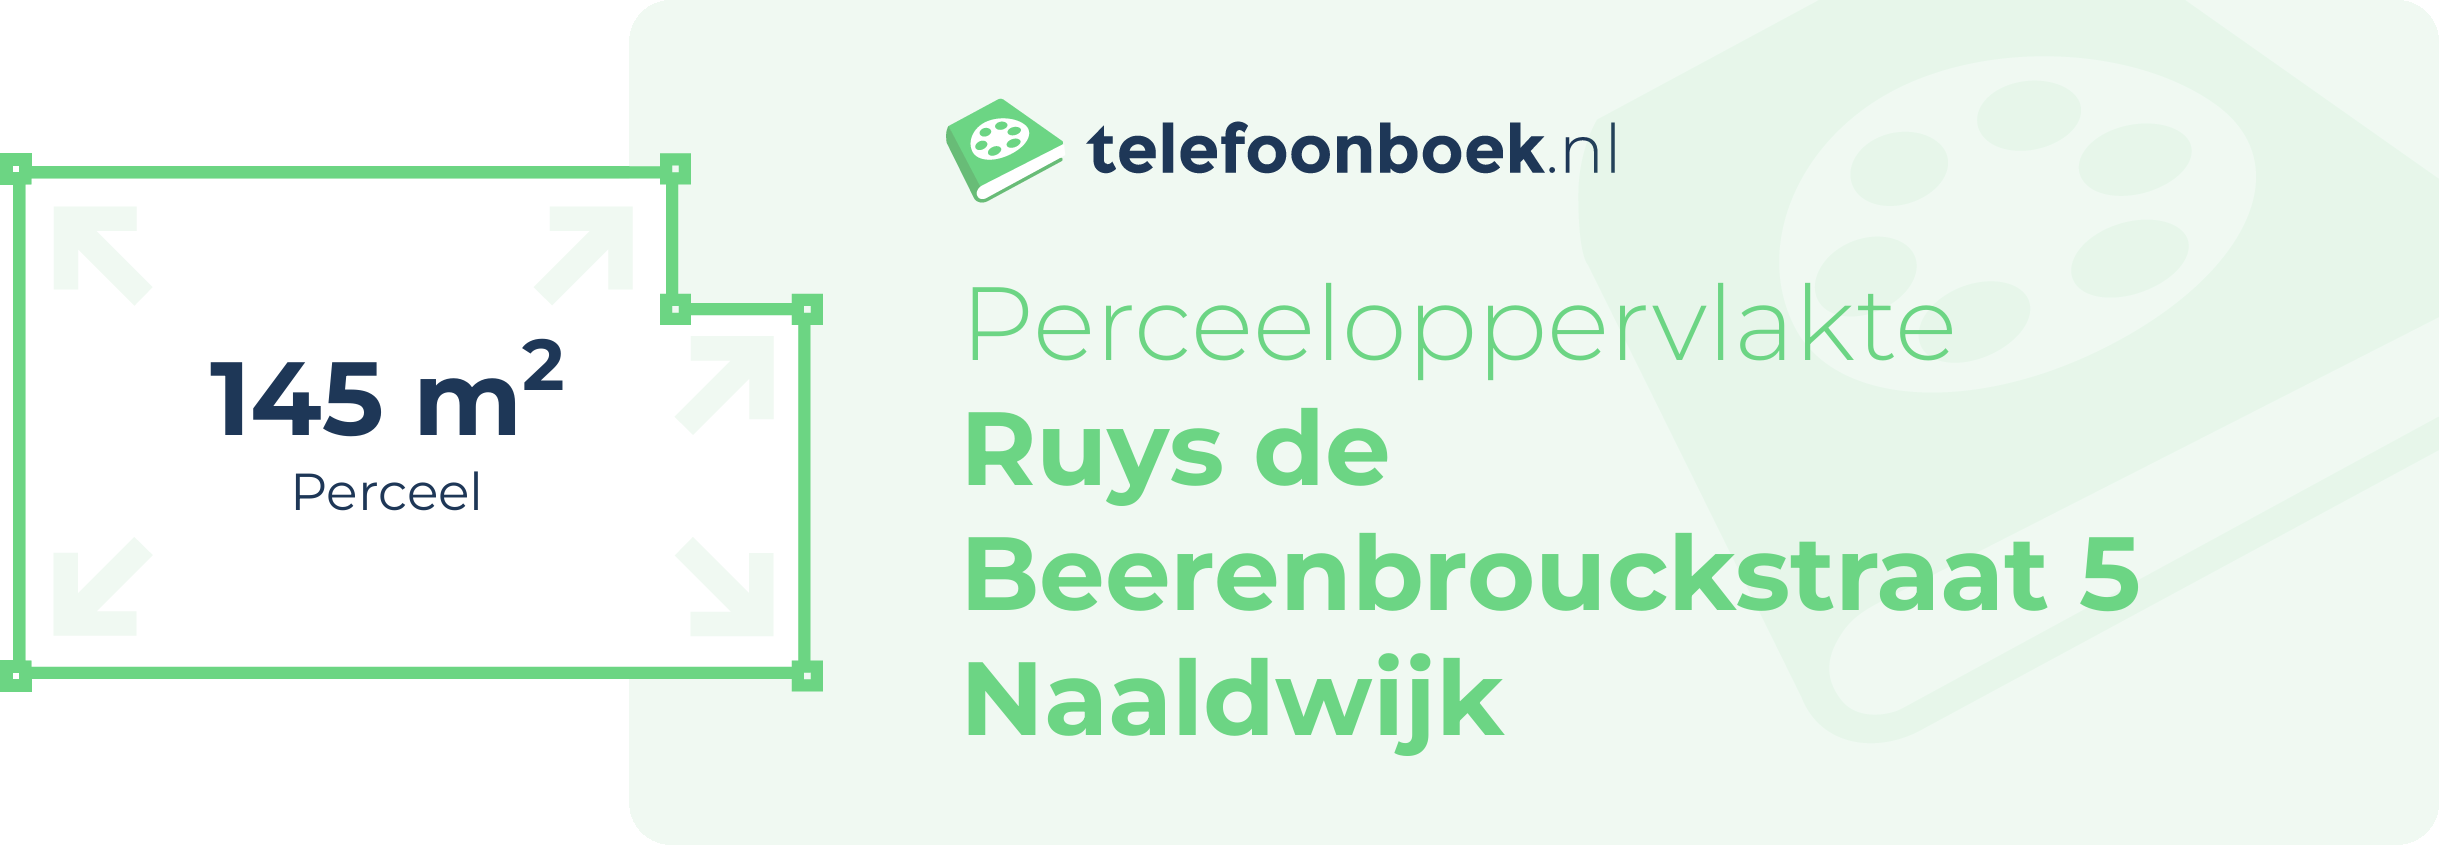 Perceeloppervlakte Ruys De Beerenbrouckstraat 5 Naaldwijk